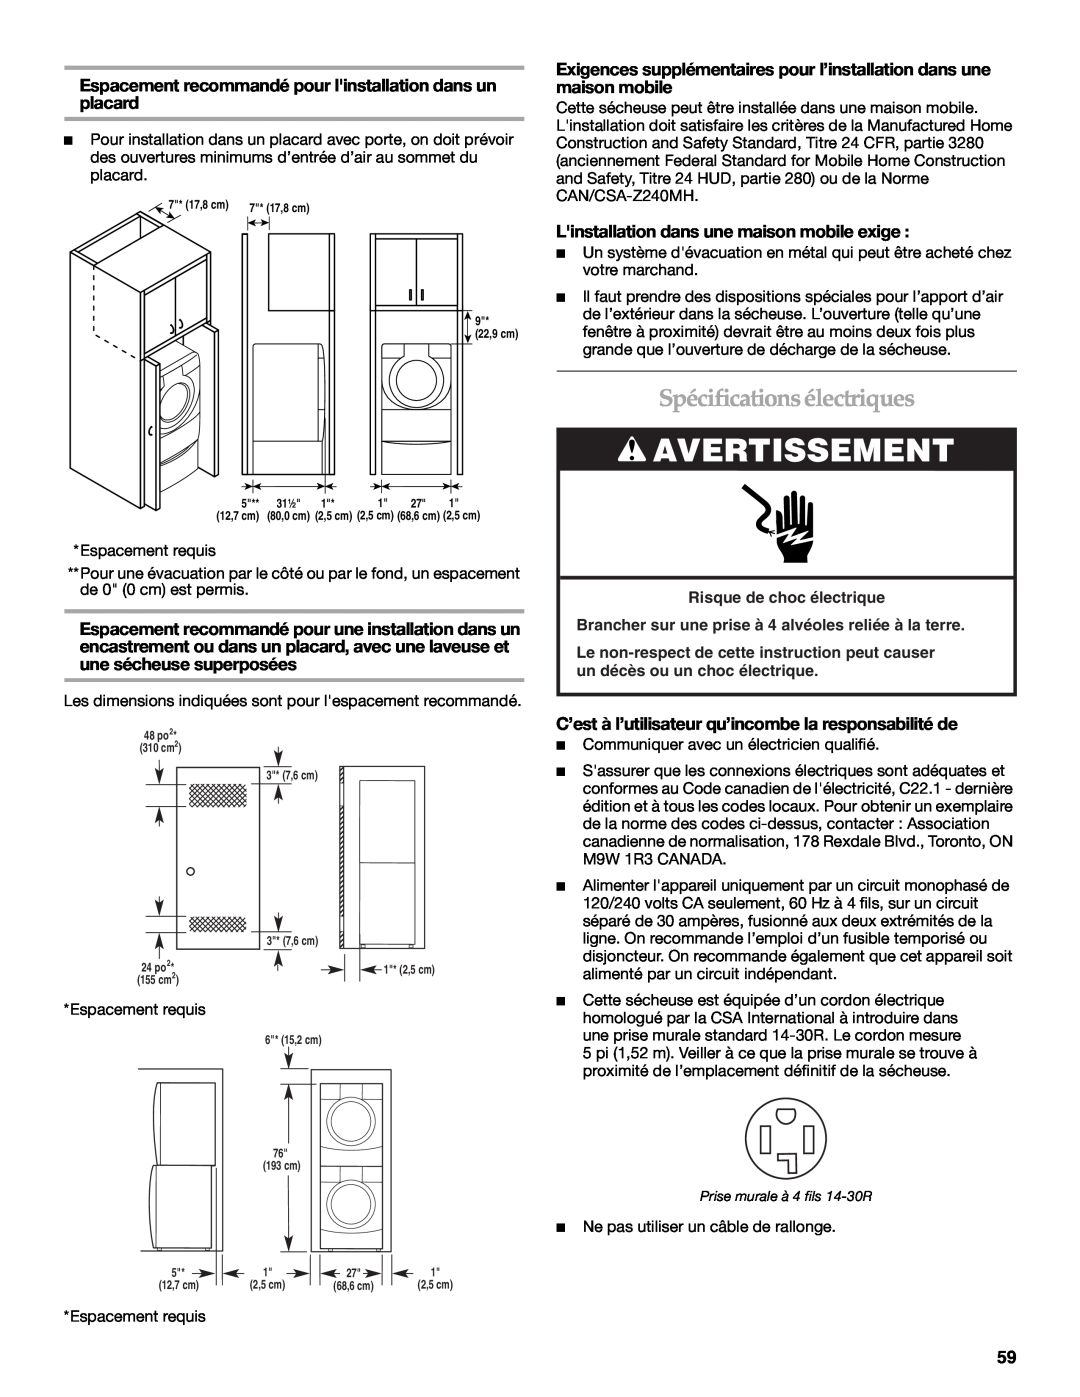 Maytag W10099070 manual Spécificationsélectriques, Espacement recommandé pour linstallation dans un placard, Avertissement 